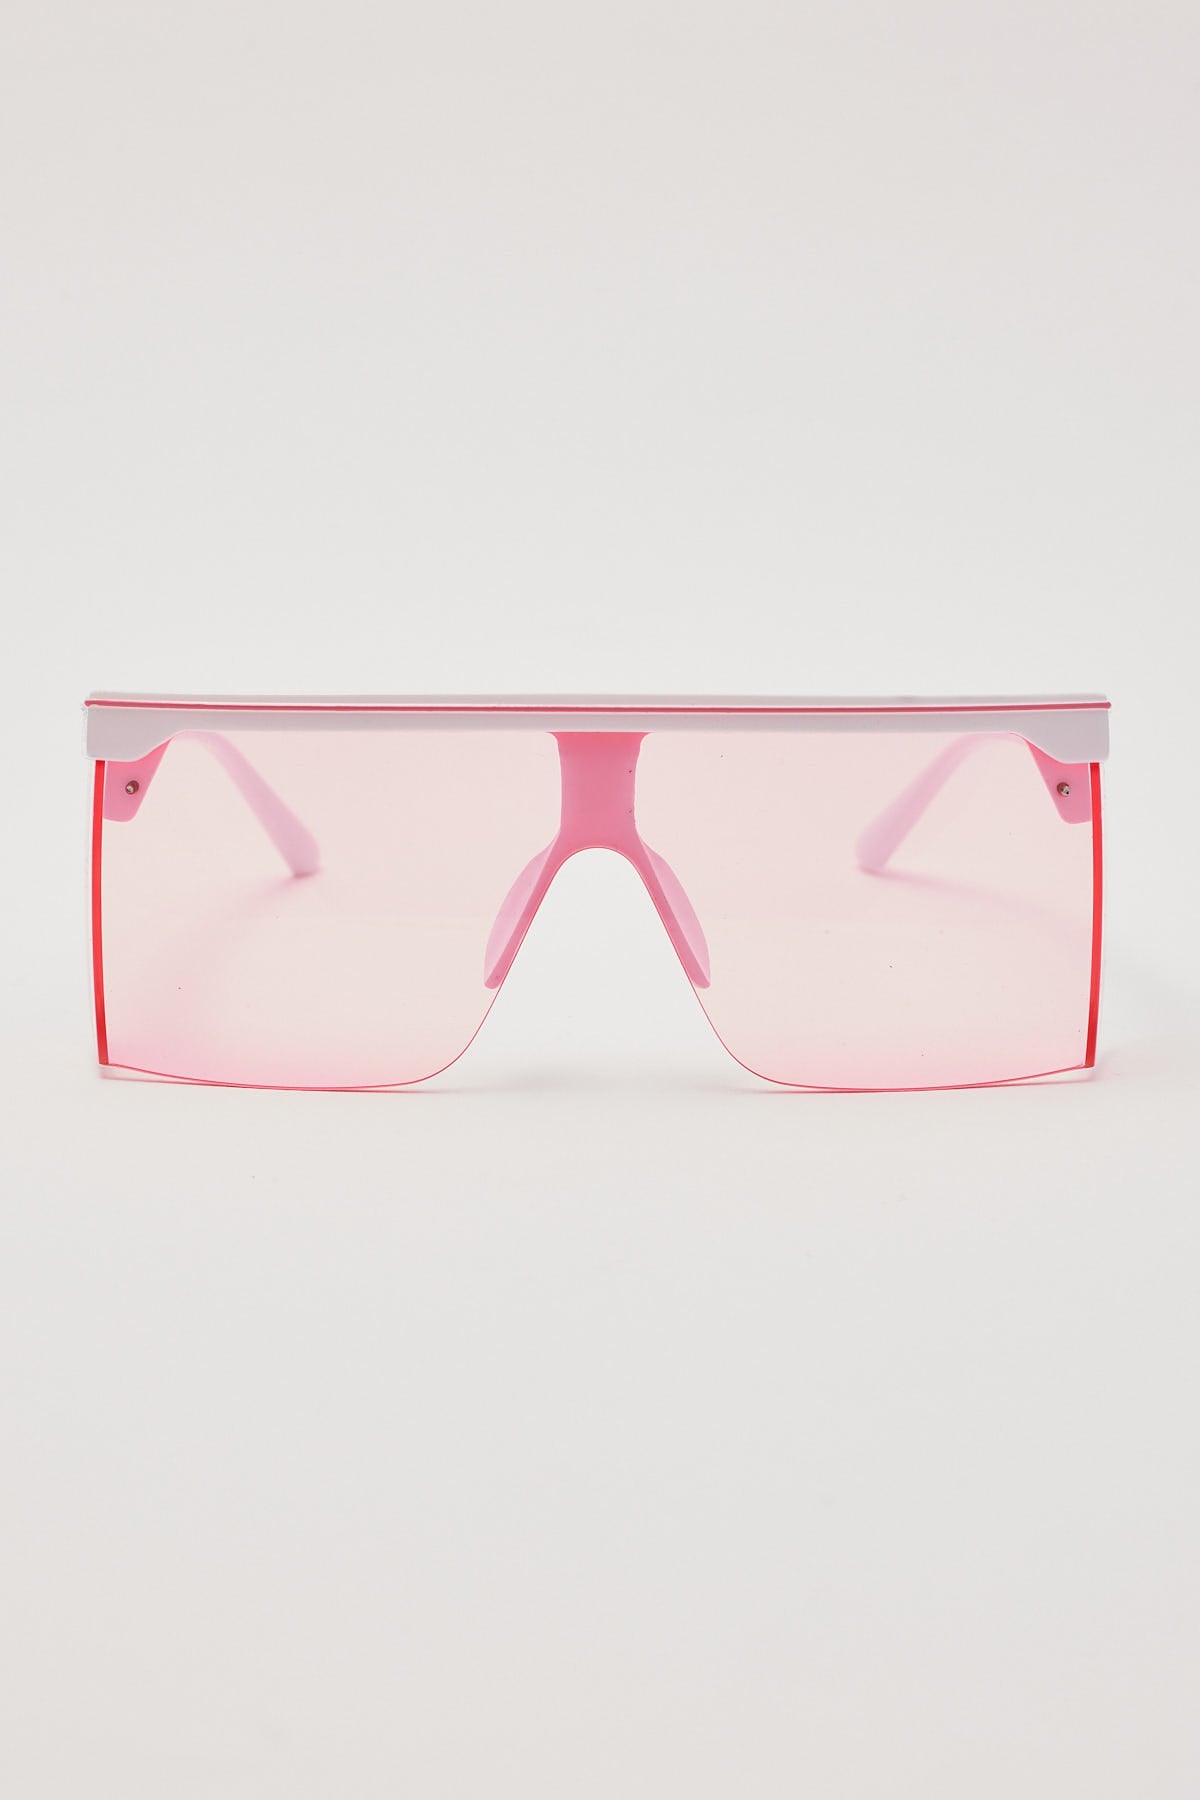 Unity Eyewear Garage Pink/White